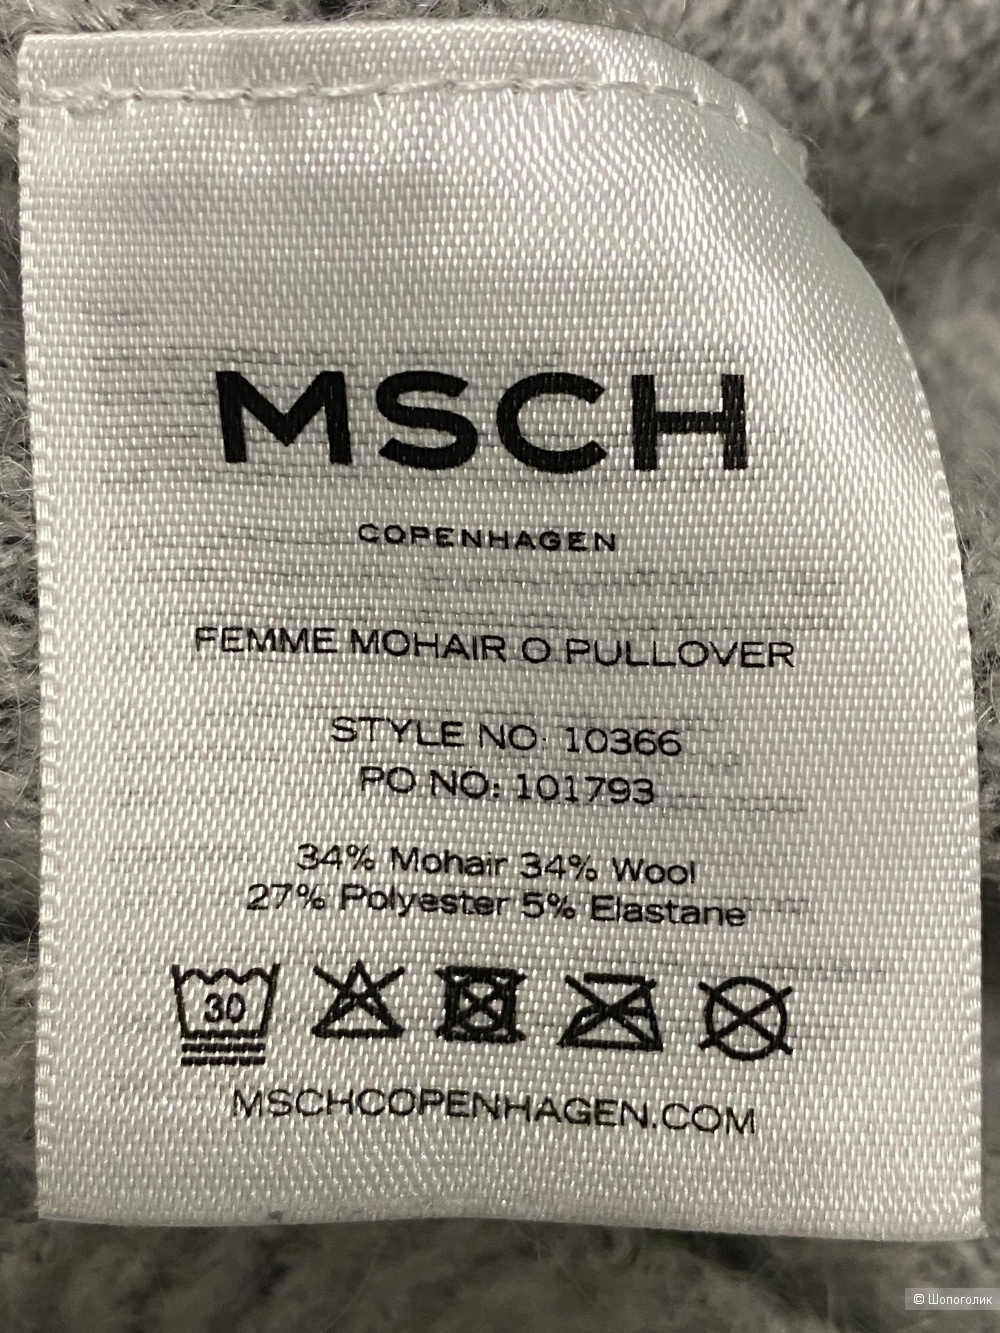 Свитер MSCH S/M